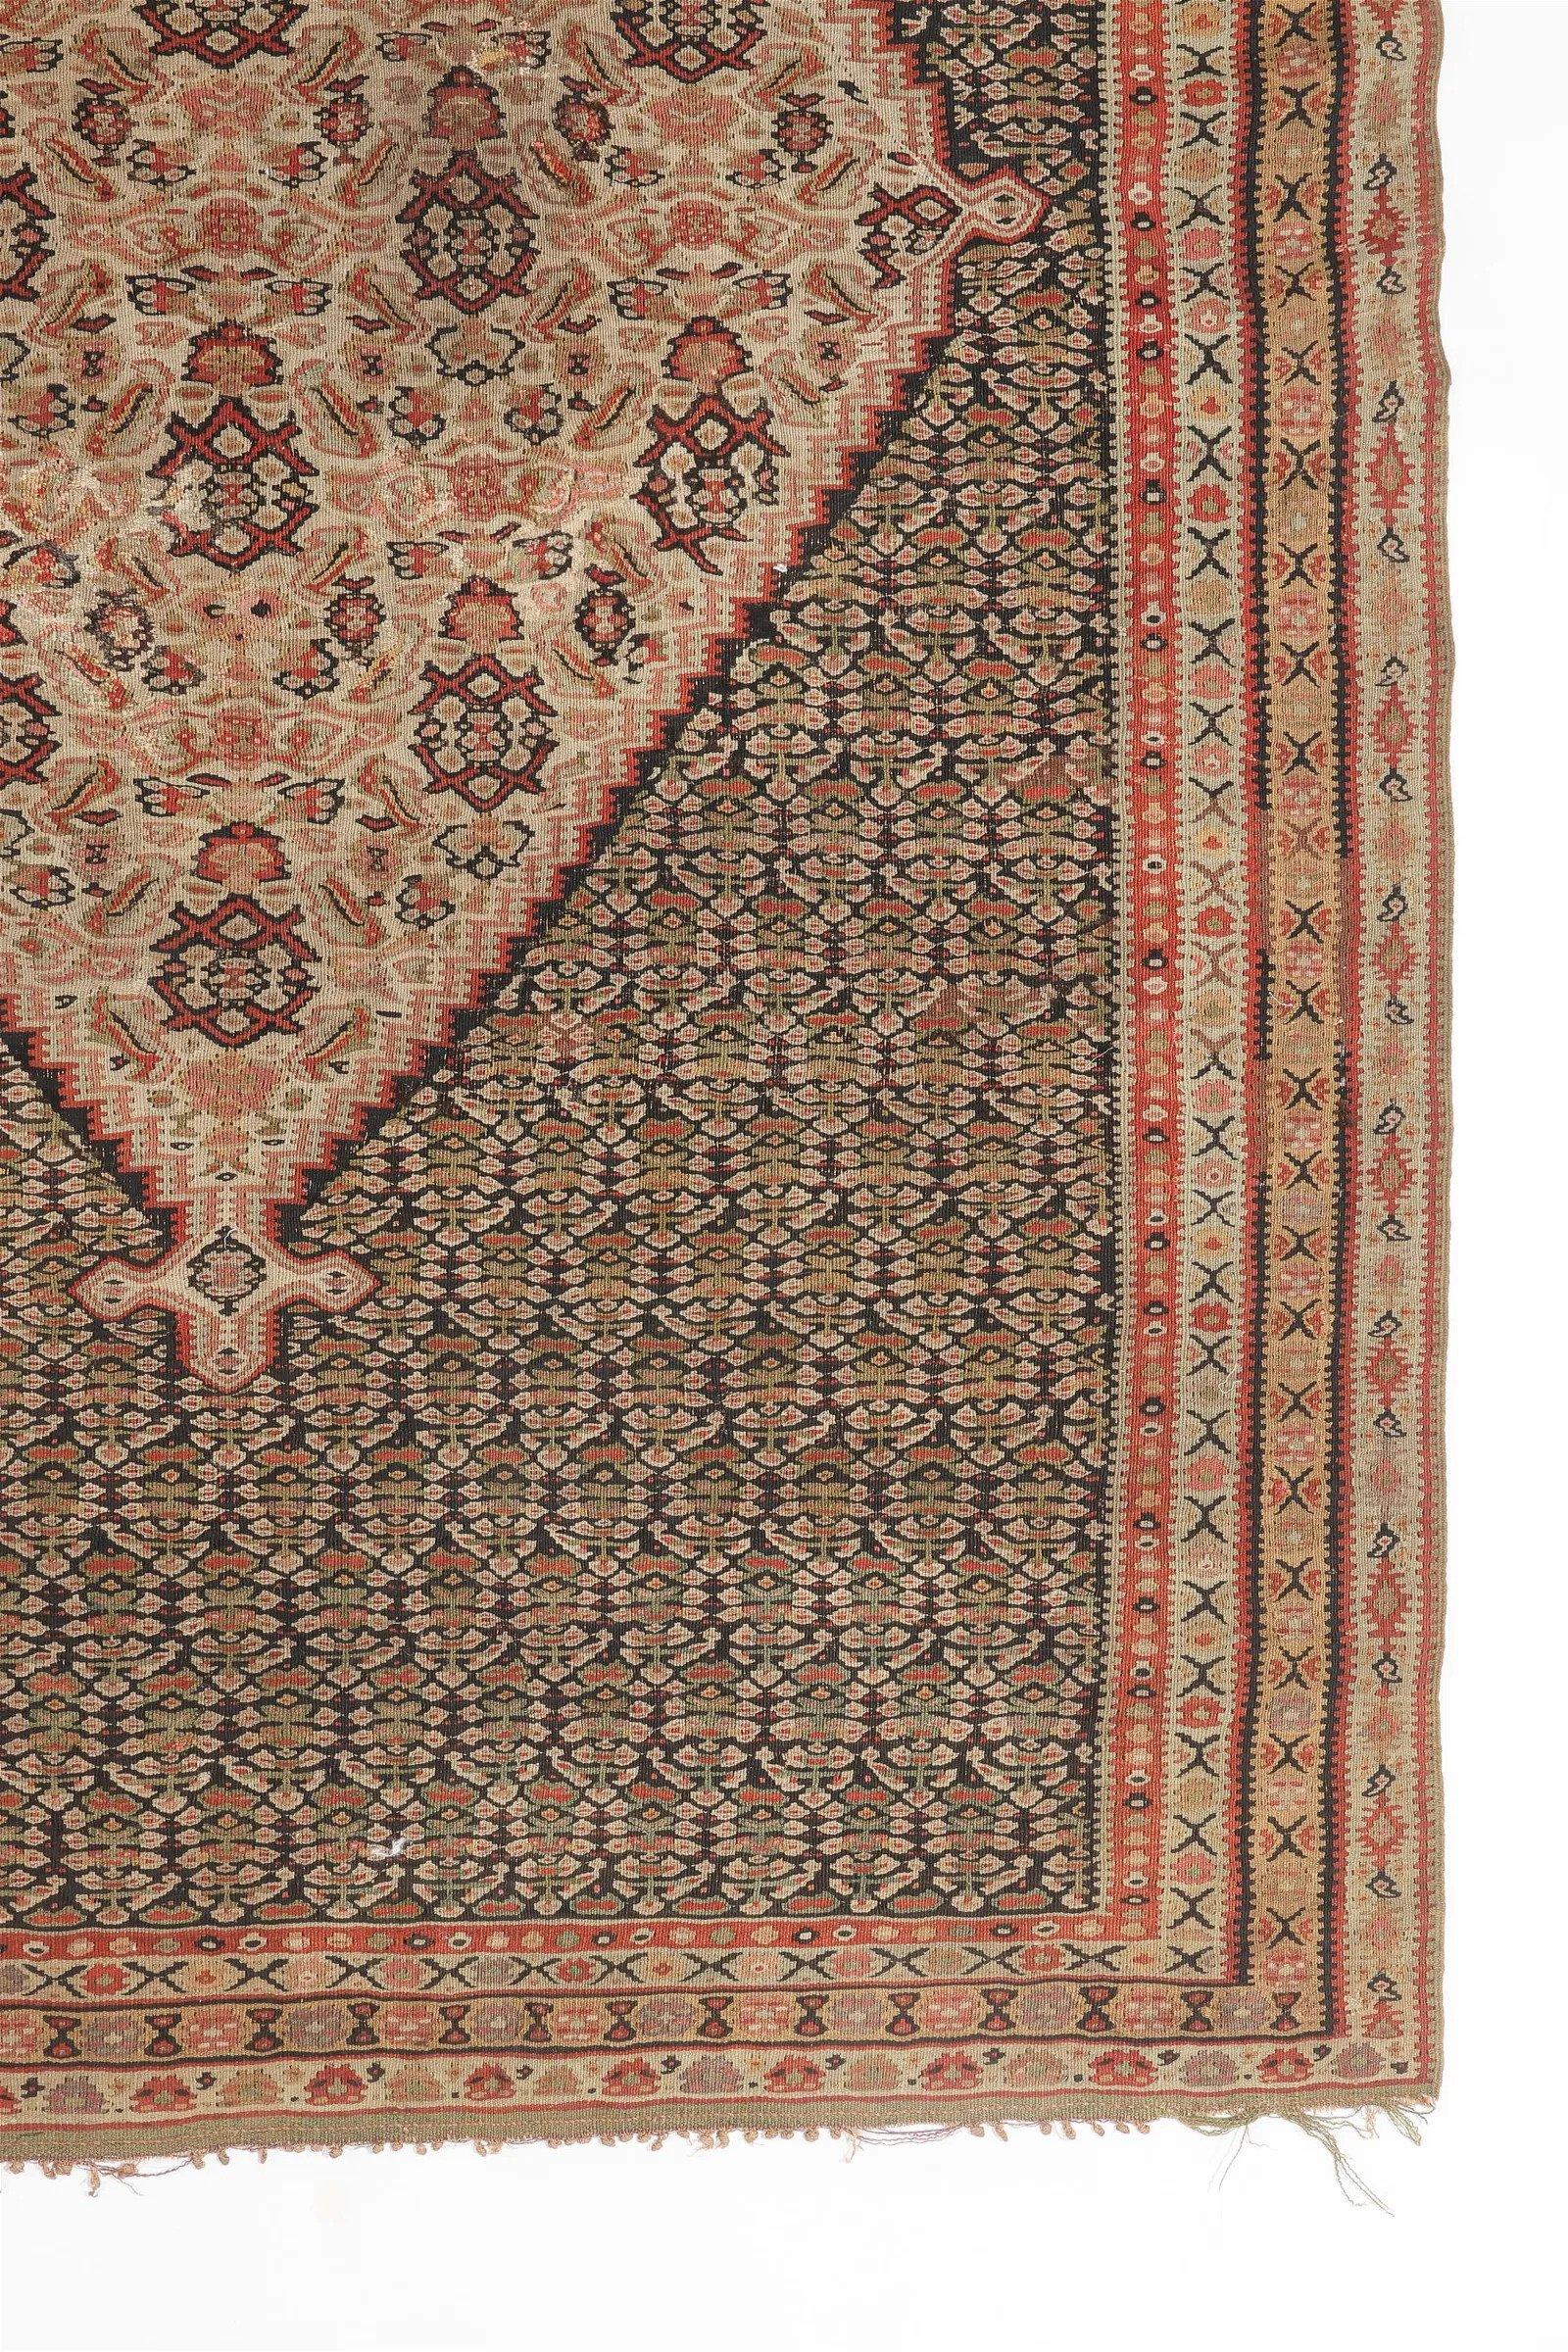 Ce Rug & Kilim en laine provient de Perse à la fin du 19e siècle. Le médaillon central est surmonté d'un délicat motif cachemire, ou 